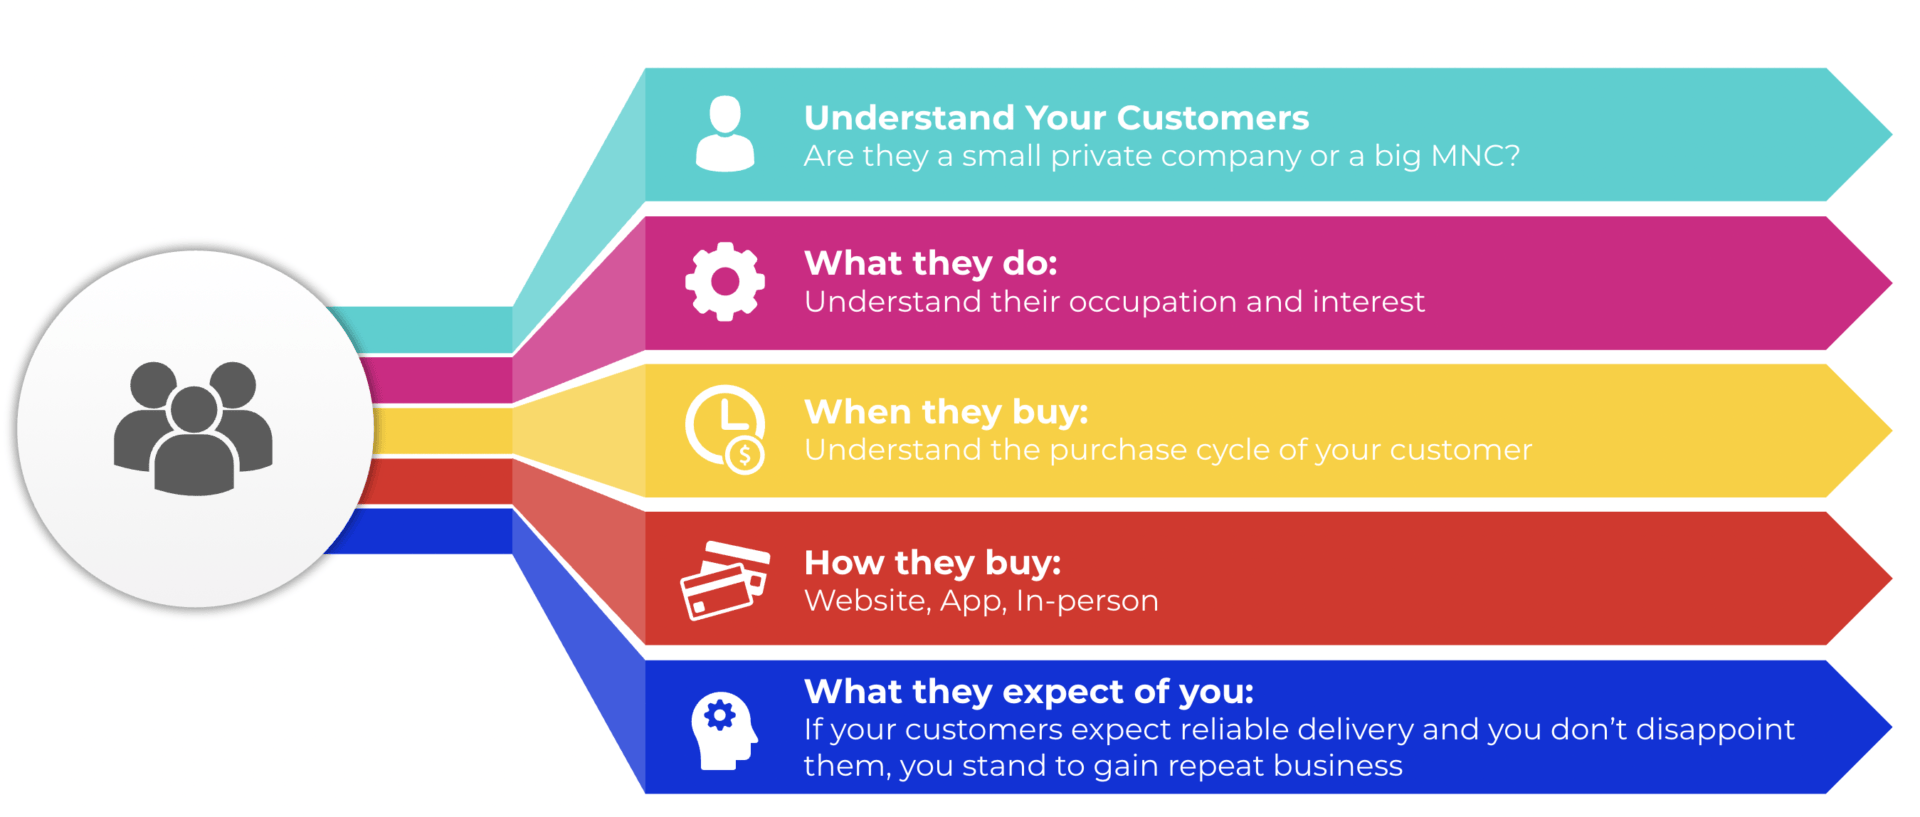 understanding your customers better